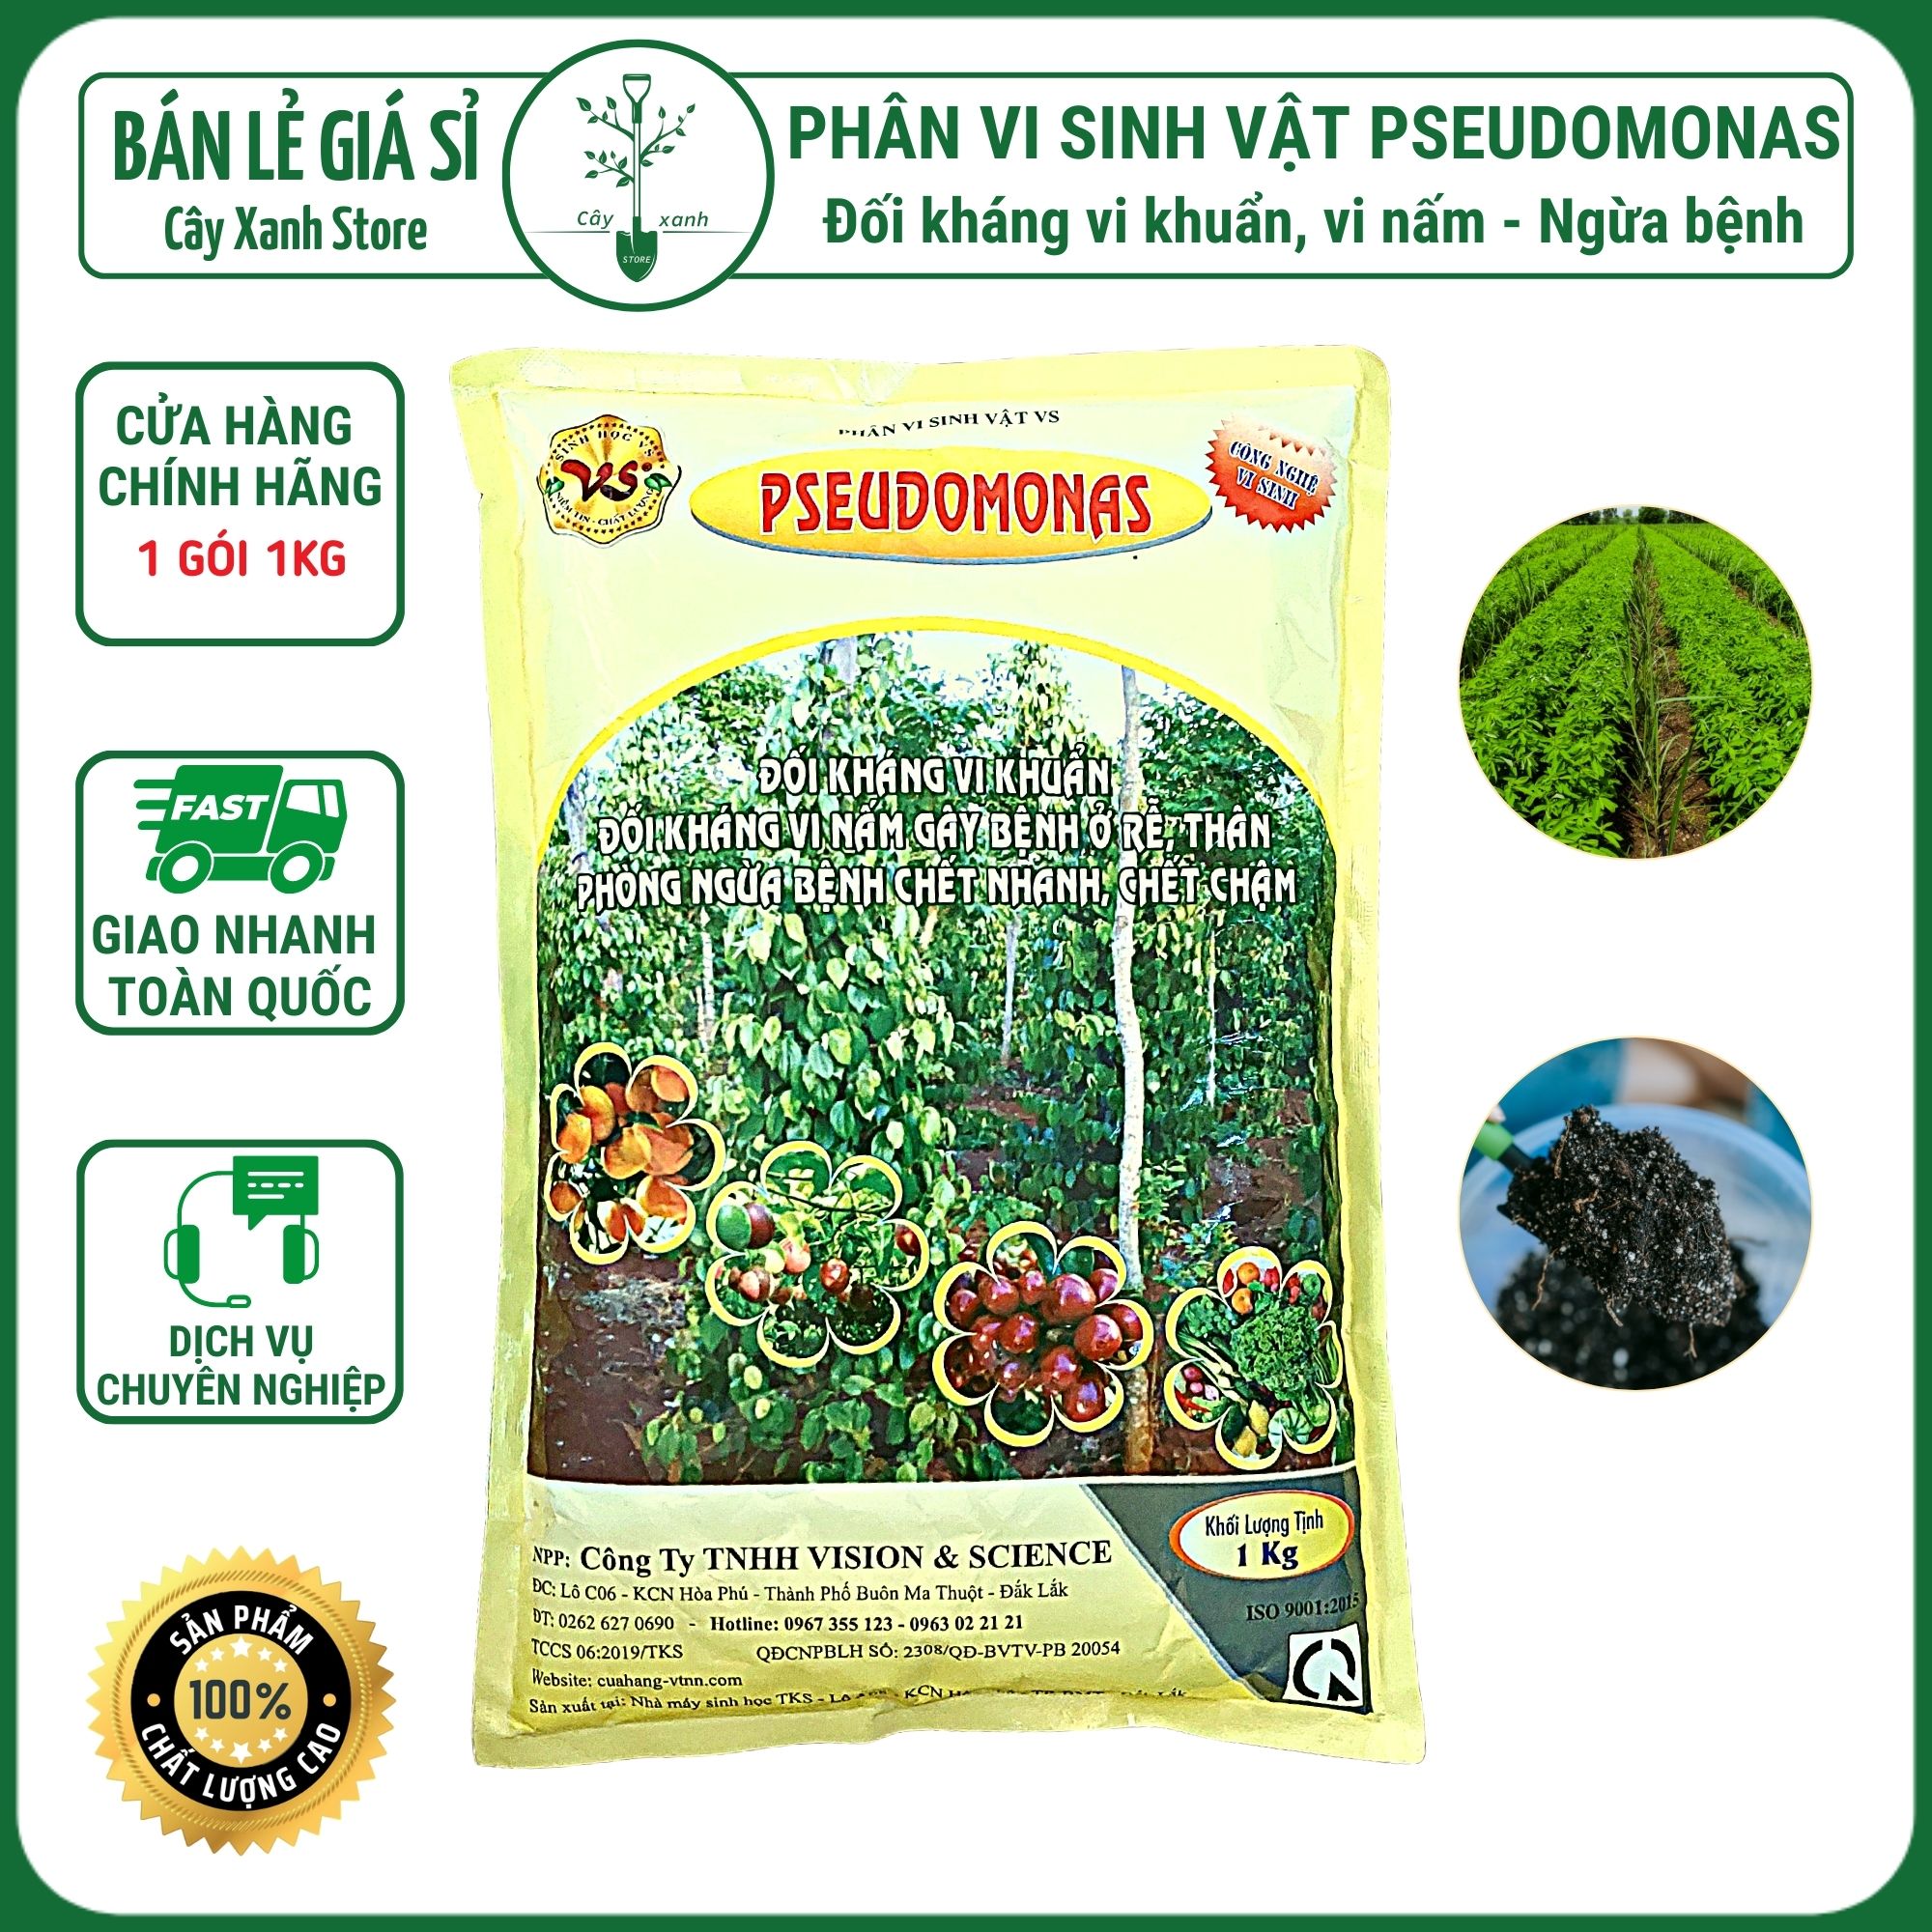 Phân vi sinh vật PSEUDOMONAS - Phòng trừ bệnh héo xanh, thối rễ - Gói 1kg - Cây Xanh Store